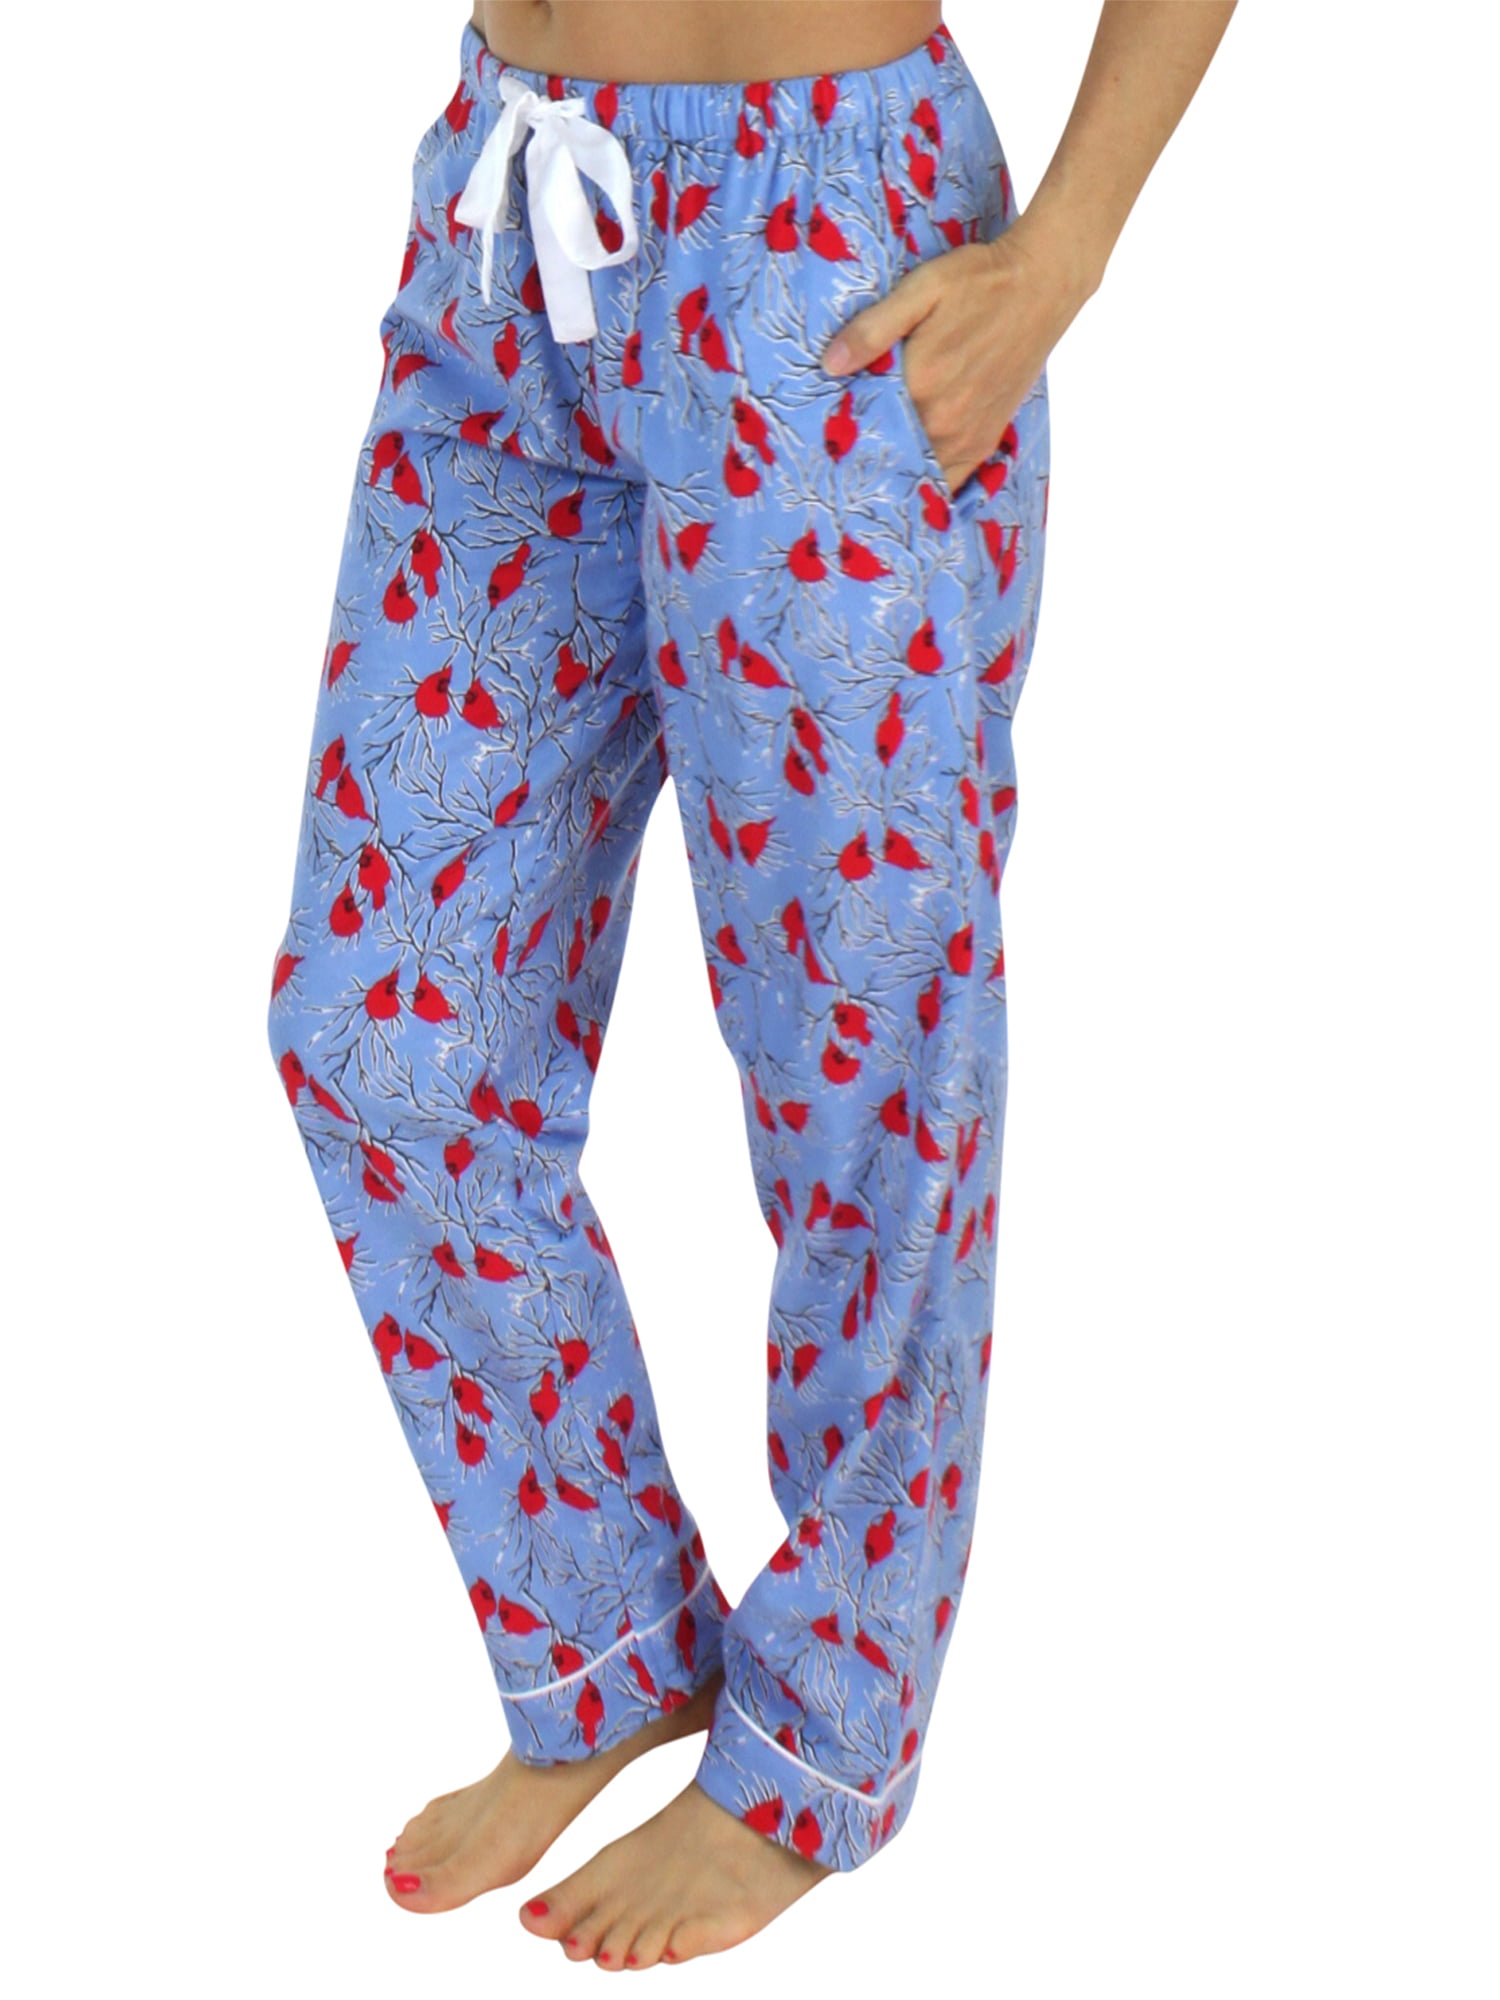 PajamaMania - PajamaMania Women's Flannel Pajama PJ Pants - Walmart.com ...